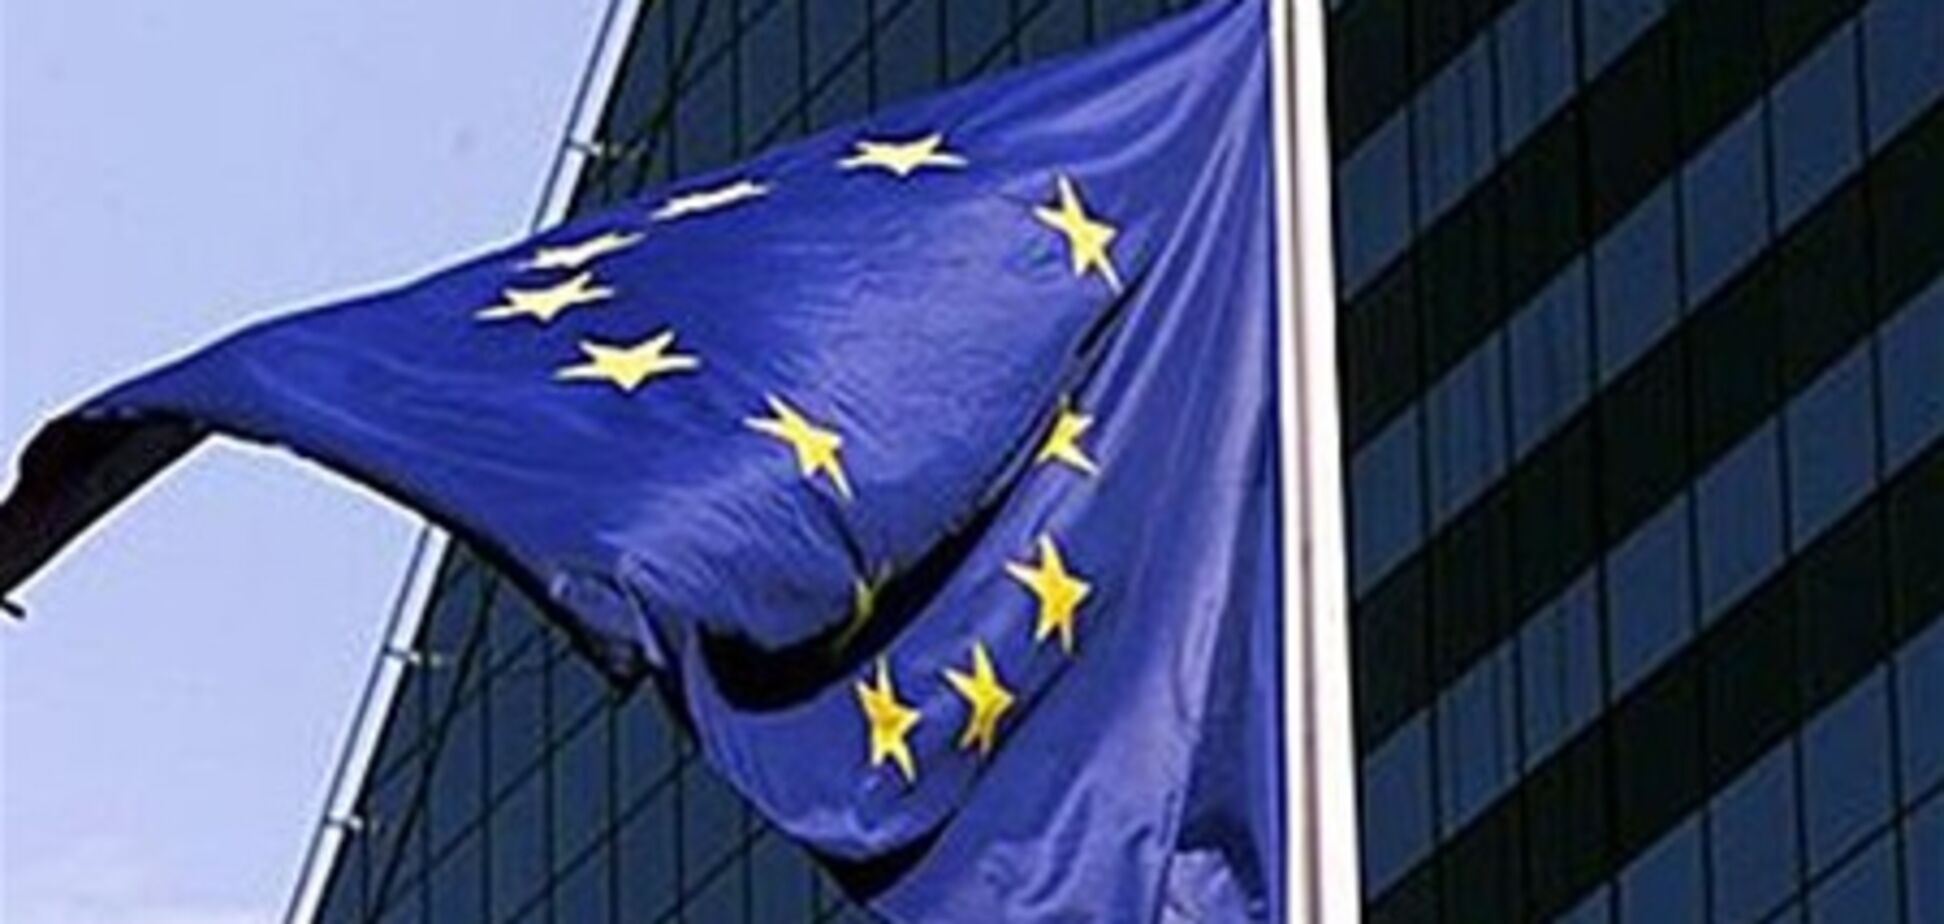 ЕС ввел новый пакет санкций против КНДР - СМИ